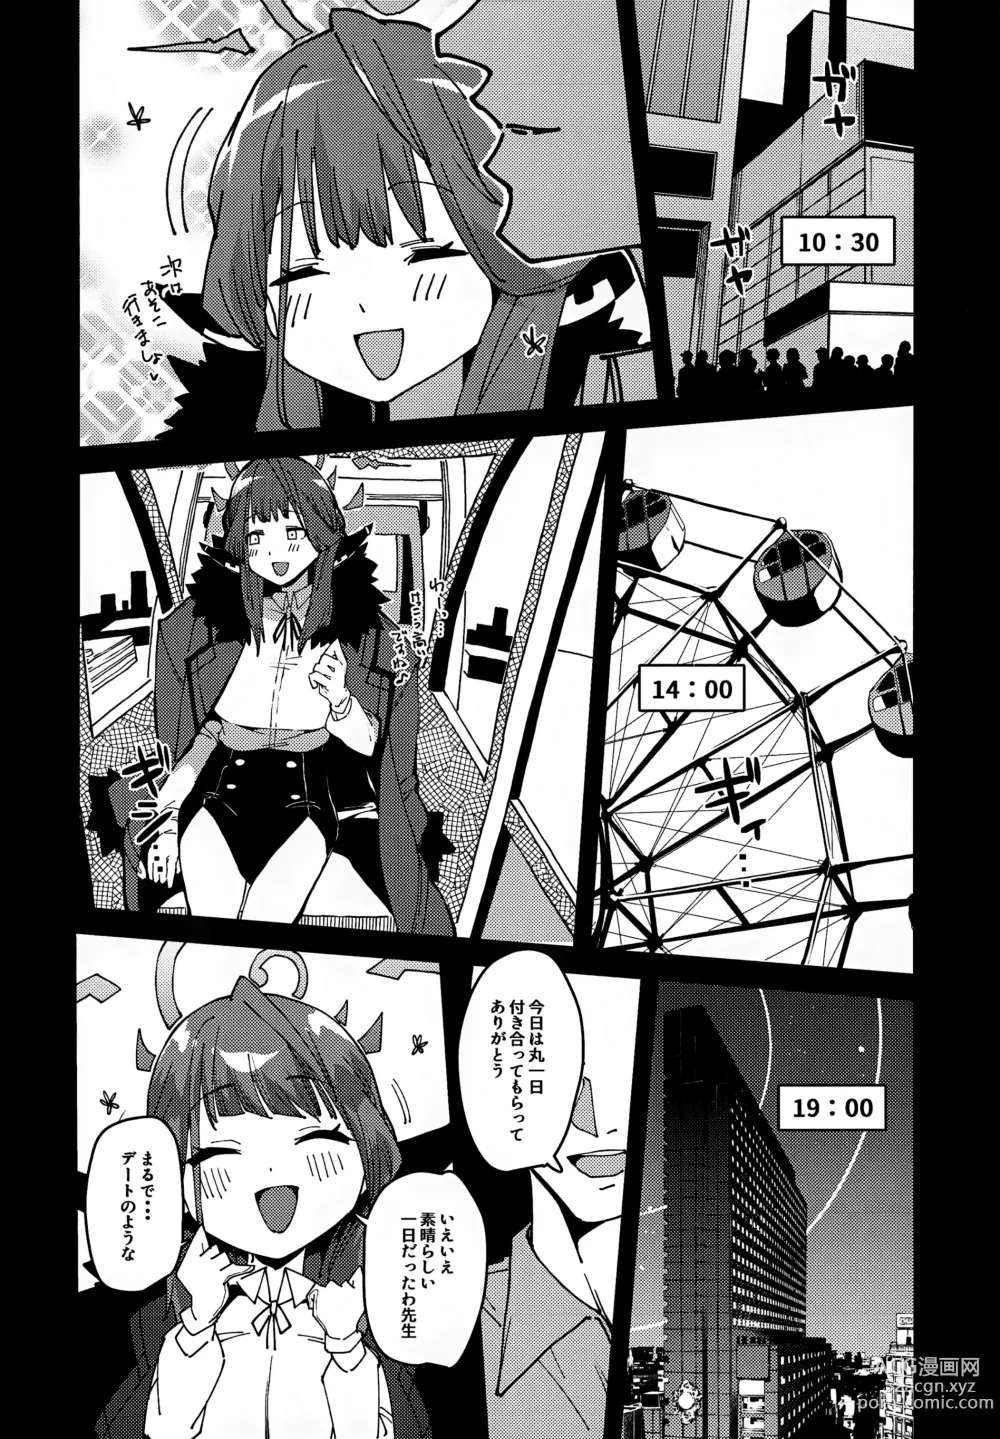 Page 5 of doujinshi Aru-chan Shachou Aigan Doubutsu ni Naru